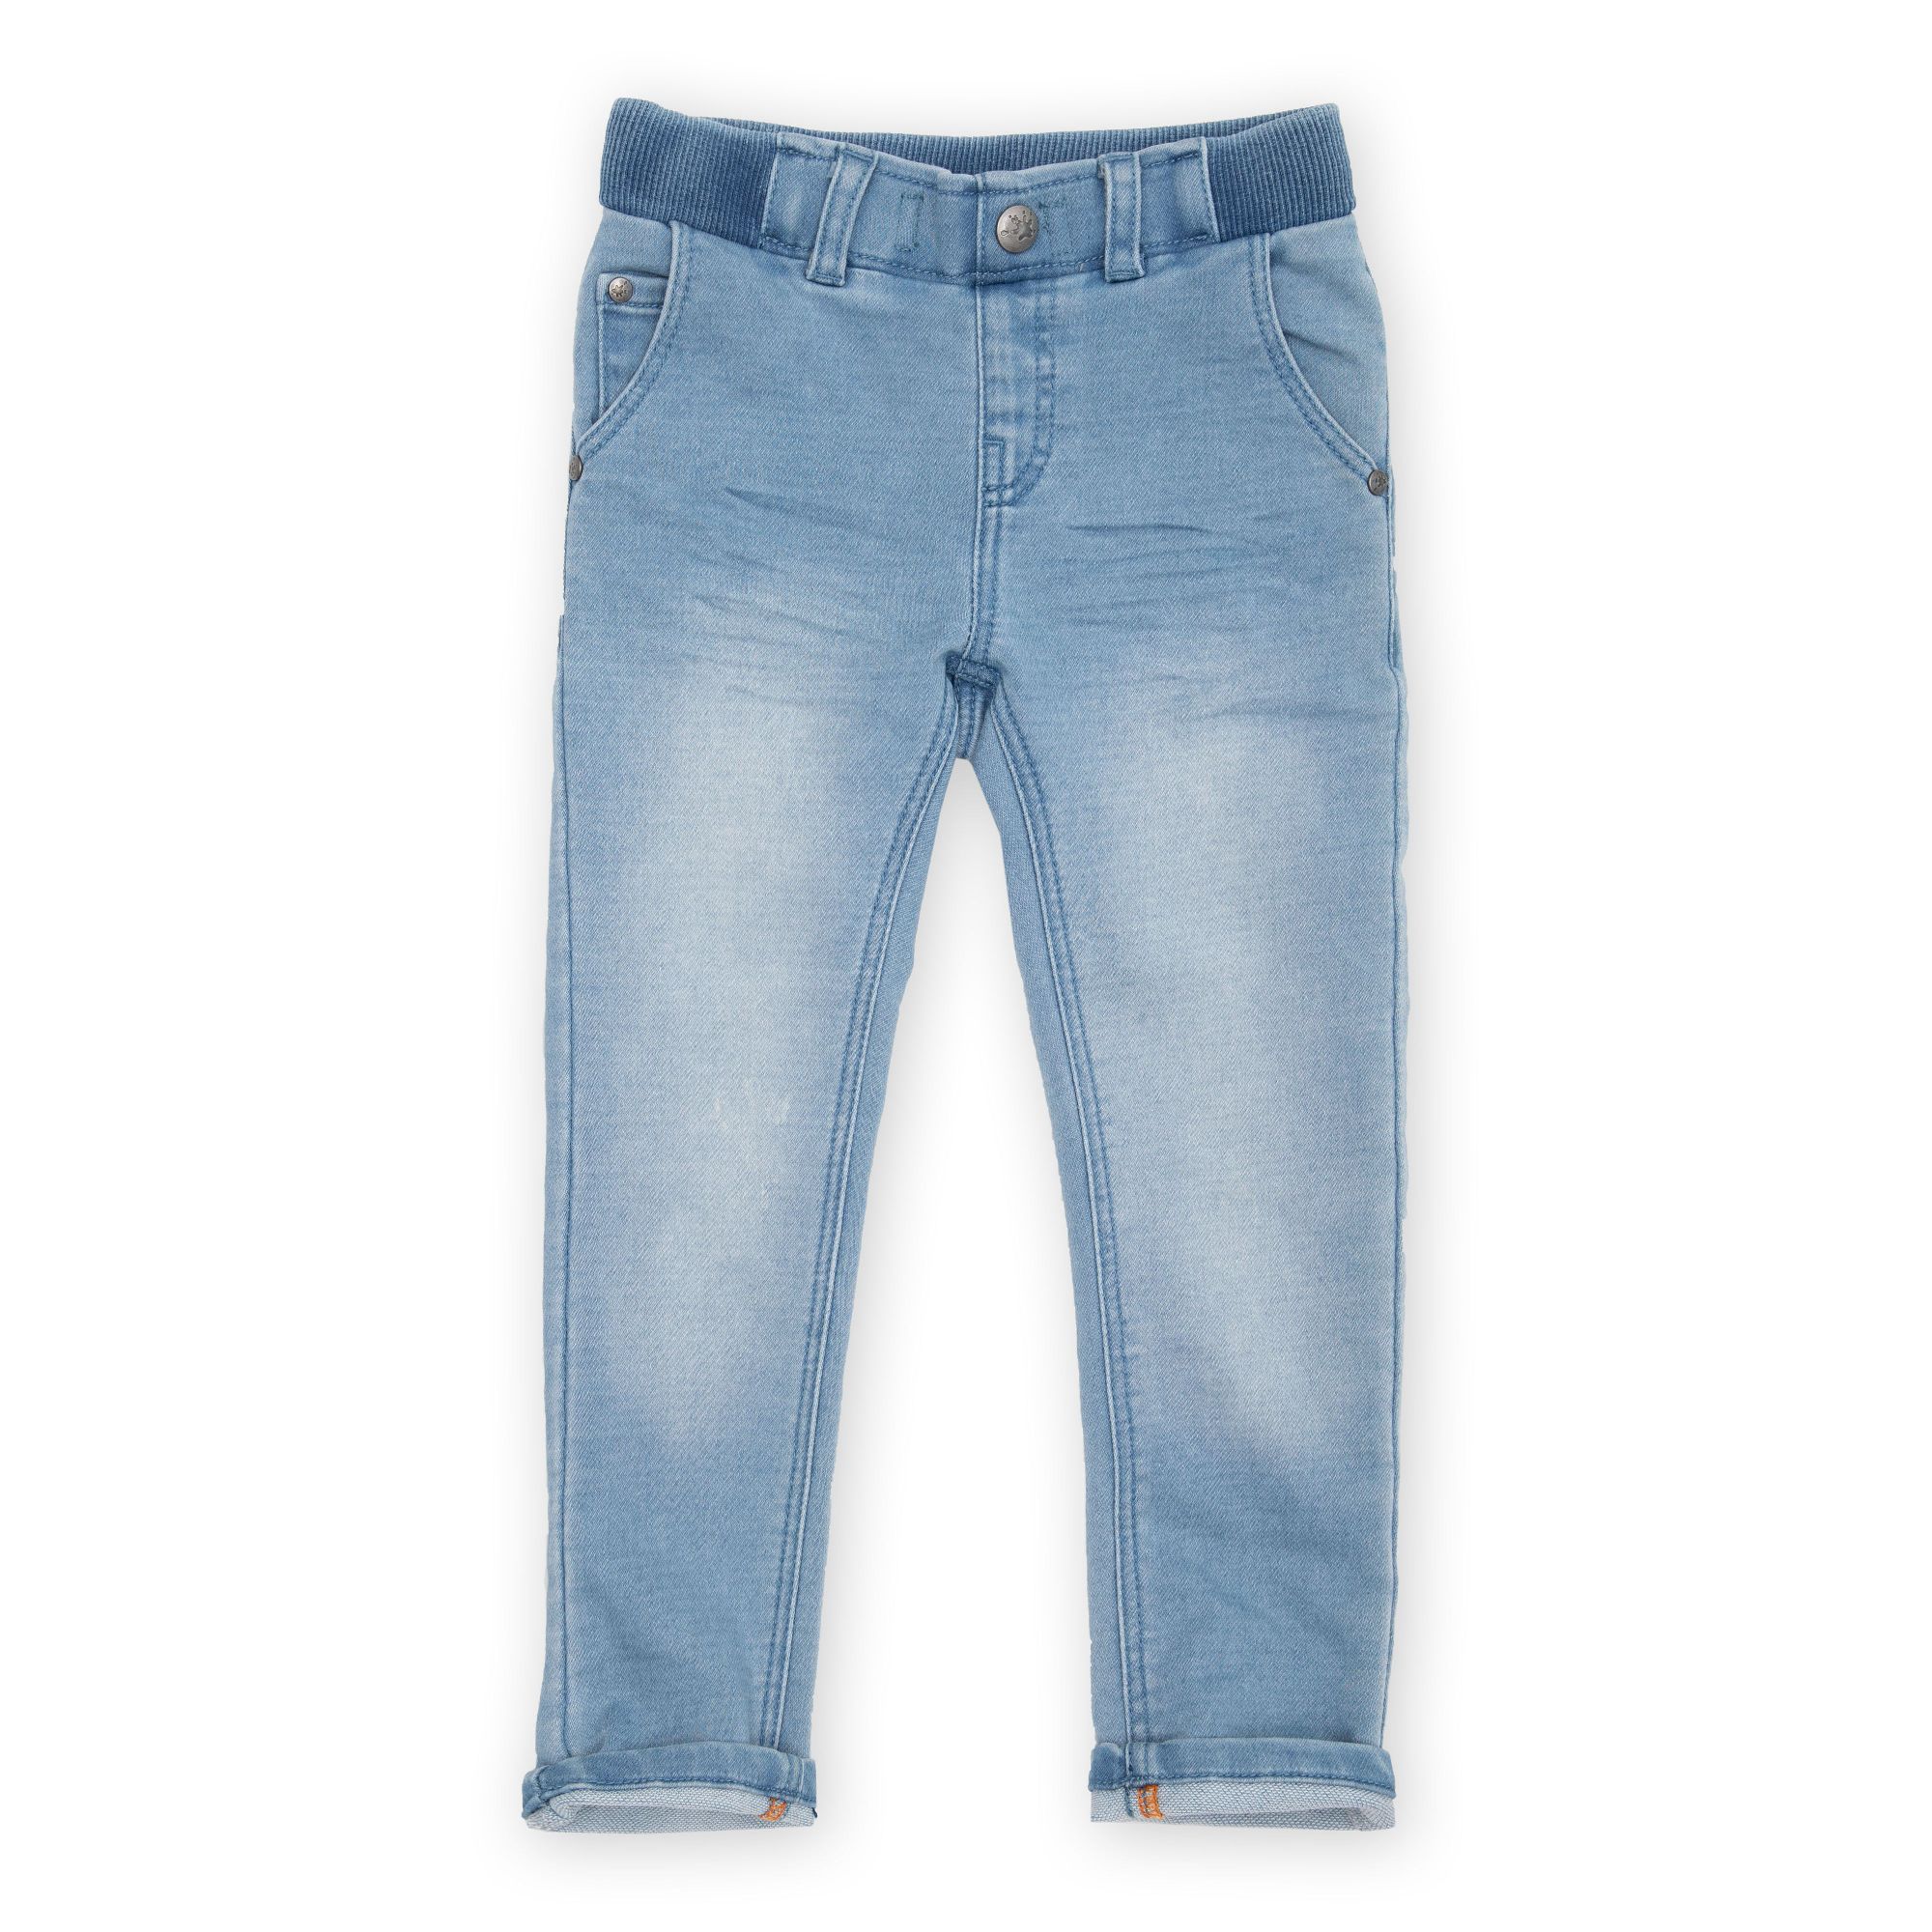 Jeans for girls, adjustable, light blue